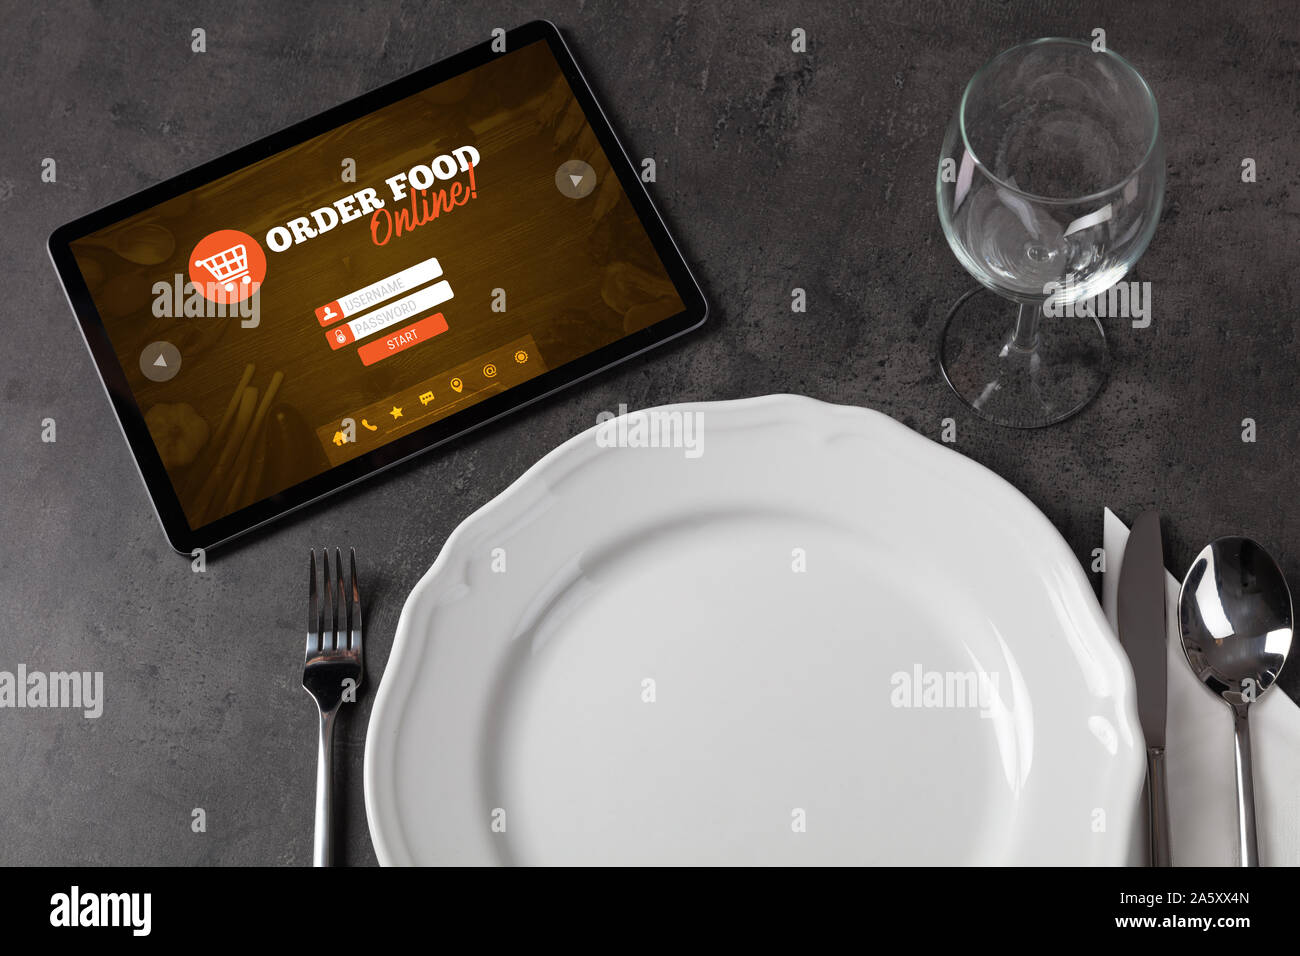 Tablet mit online Bestellung Konzept auf dem Tisch gelegen Stockfoto